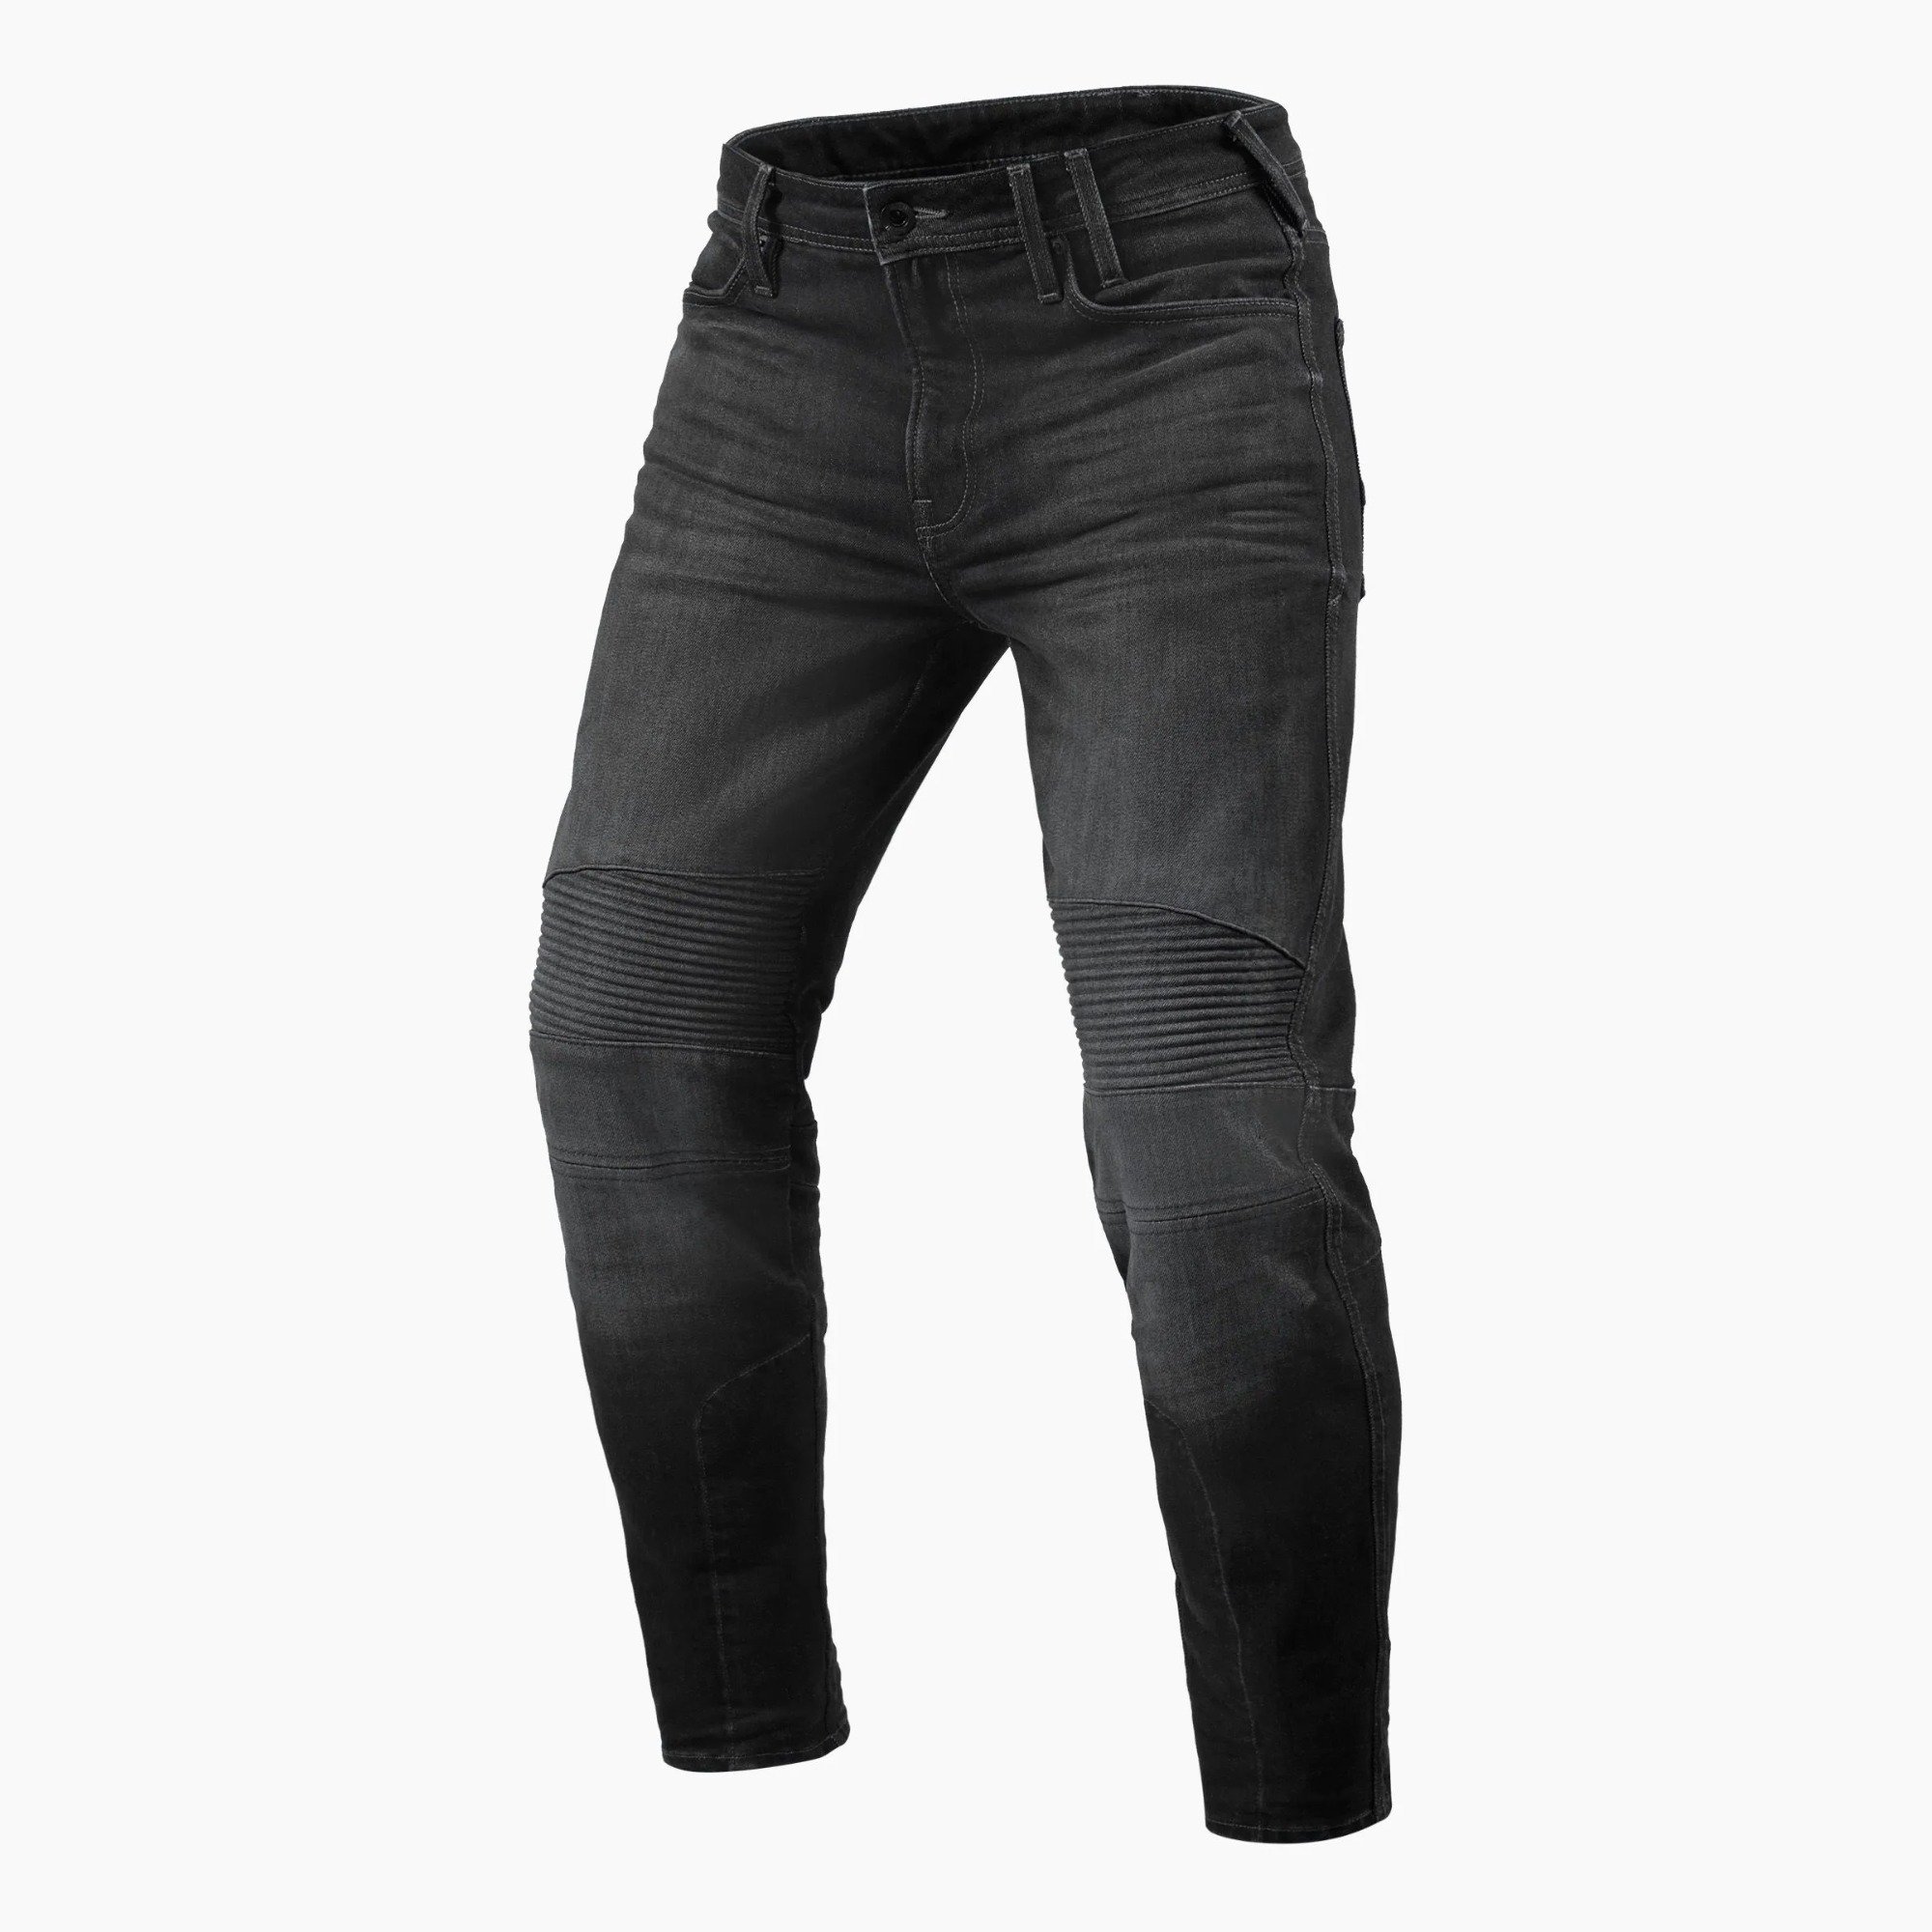 Image of REV'IT! Jeans Moto 2 TF Dark Grey Used Motorcycle Jeans Size L32/W30 EN